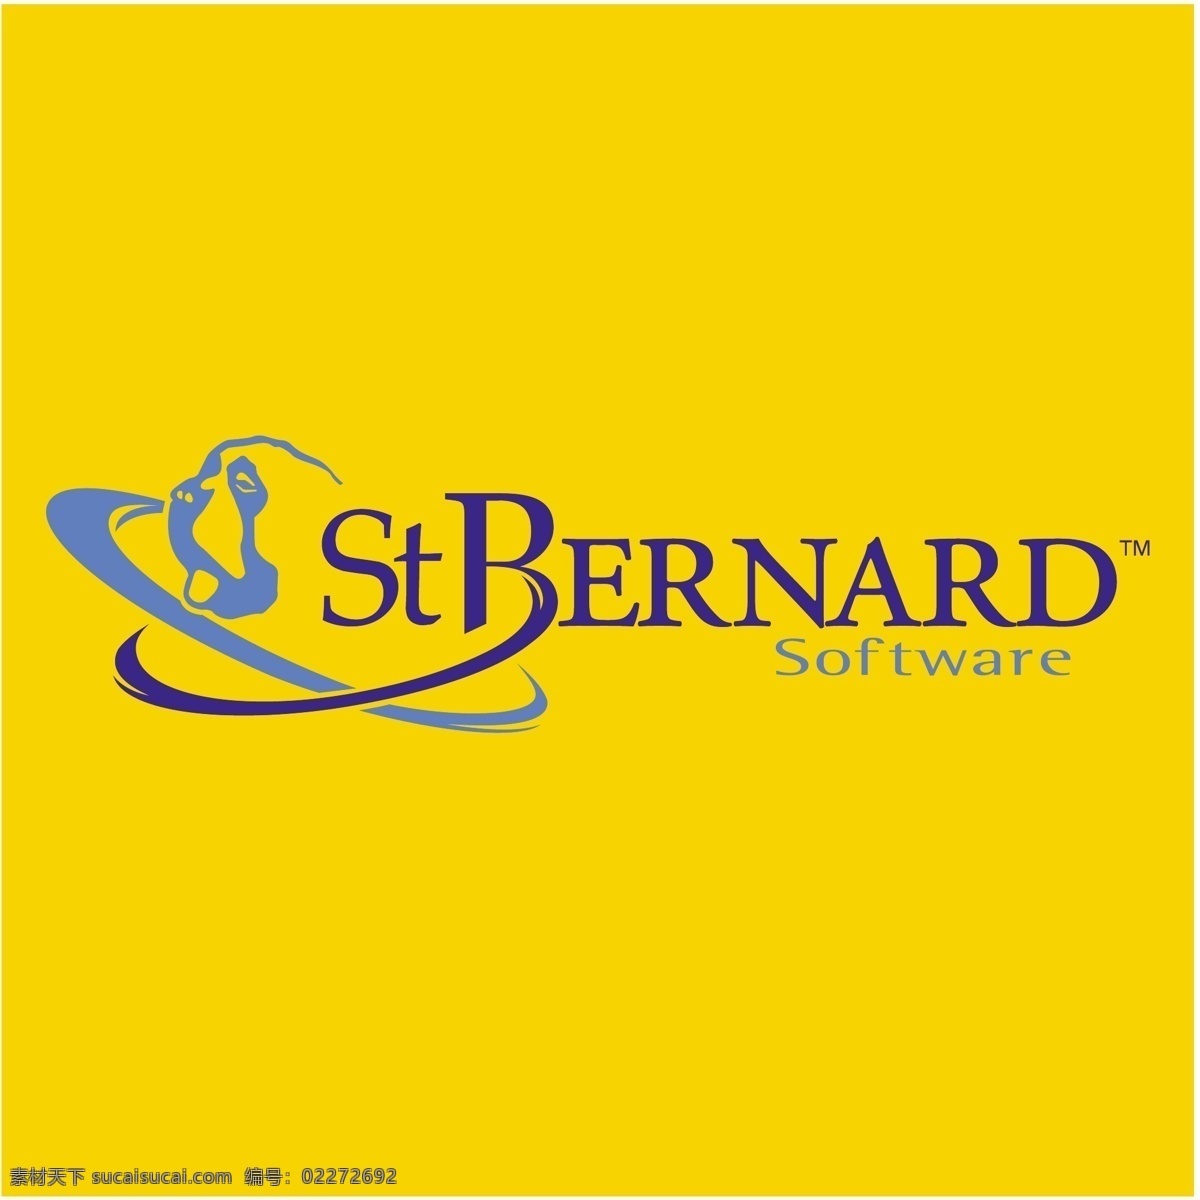 圣伯纳德软件 软件 设计软件 伯纳德 伯纳德软件 st bernard 圣伯纳德 剪影 矢量 救援 犬 自由 向量 免费 下载软件 矢量图像软件 免费的 建筑家居